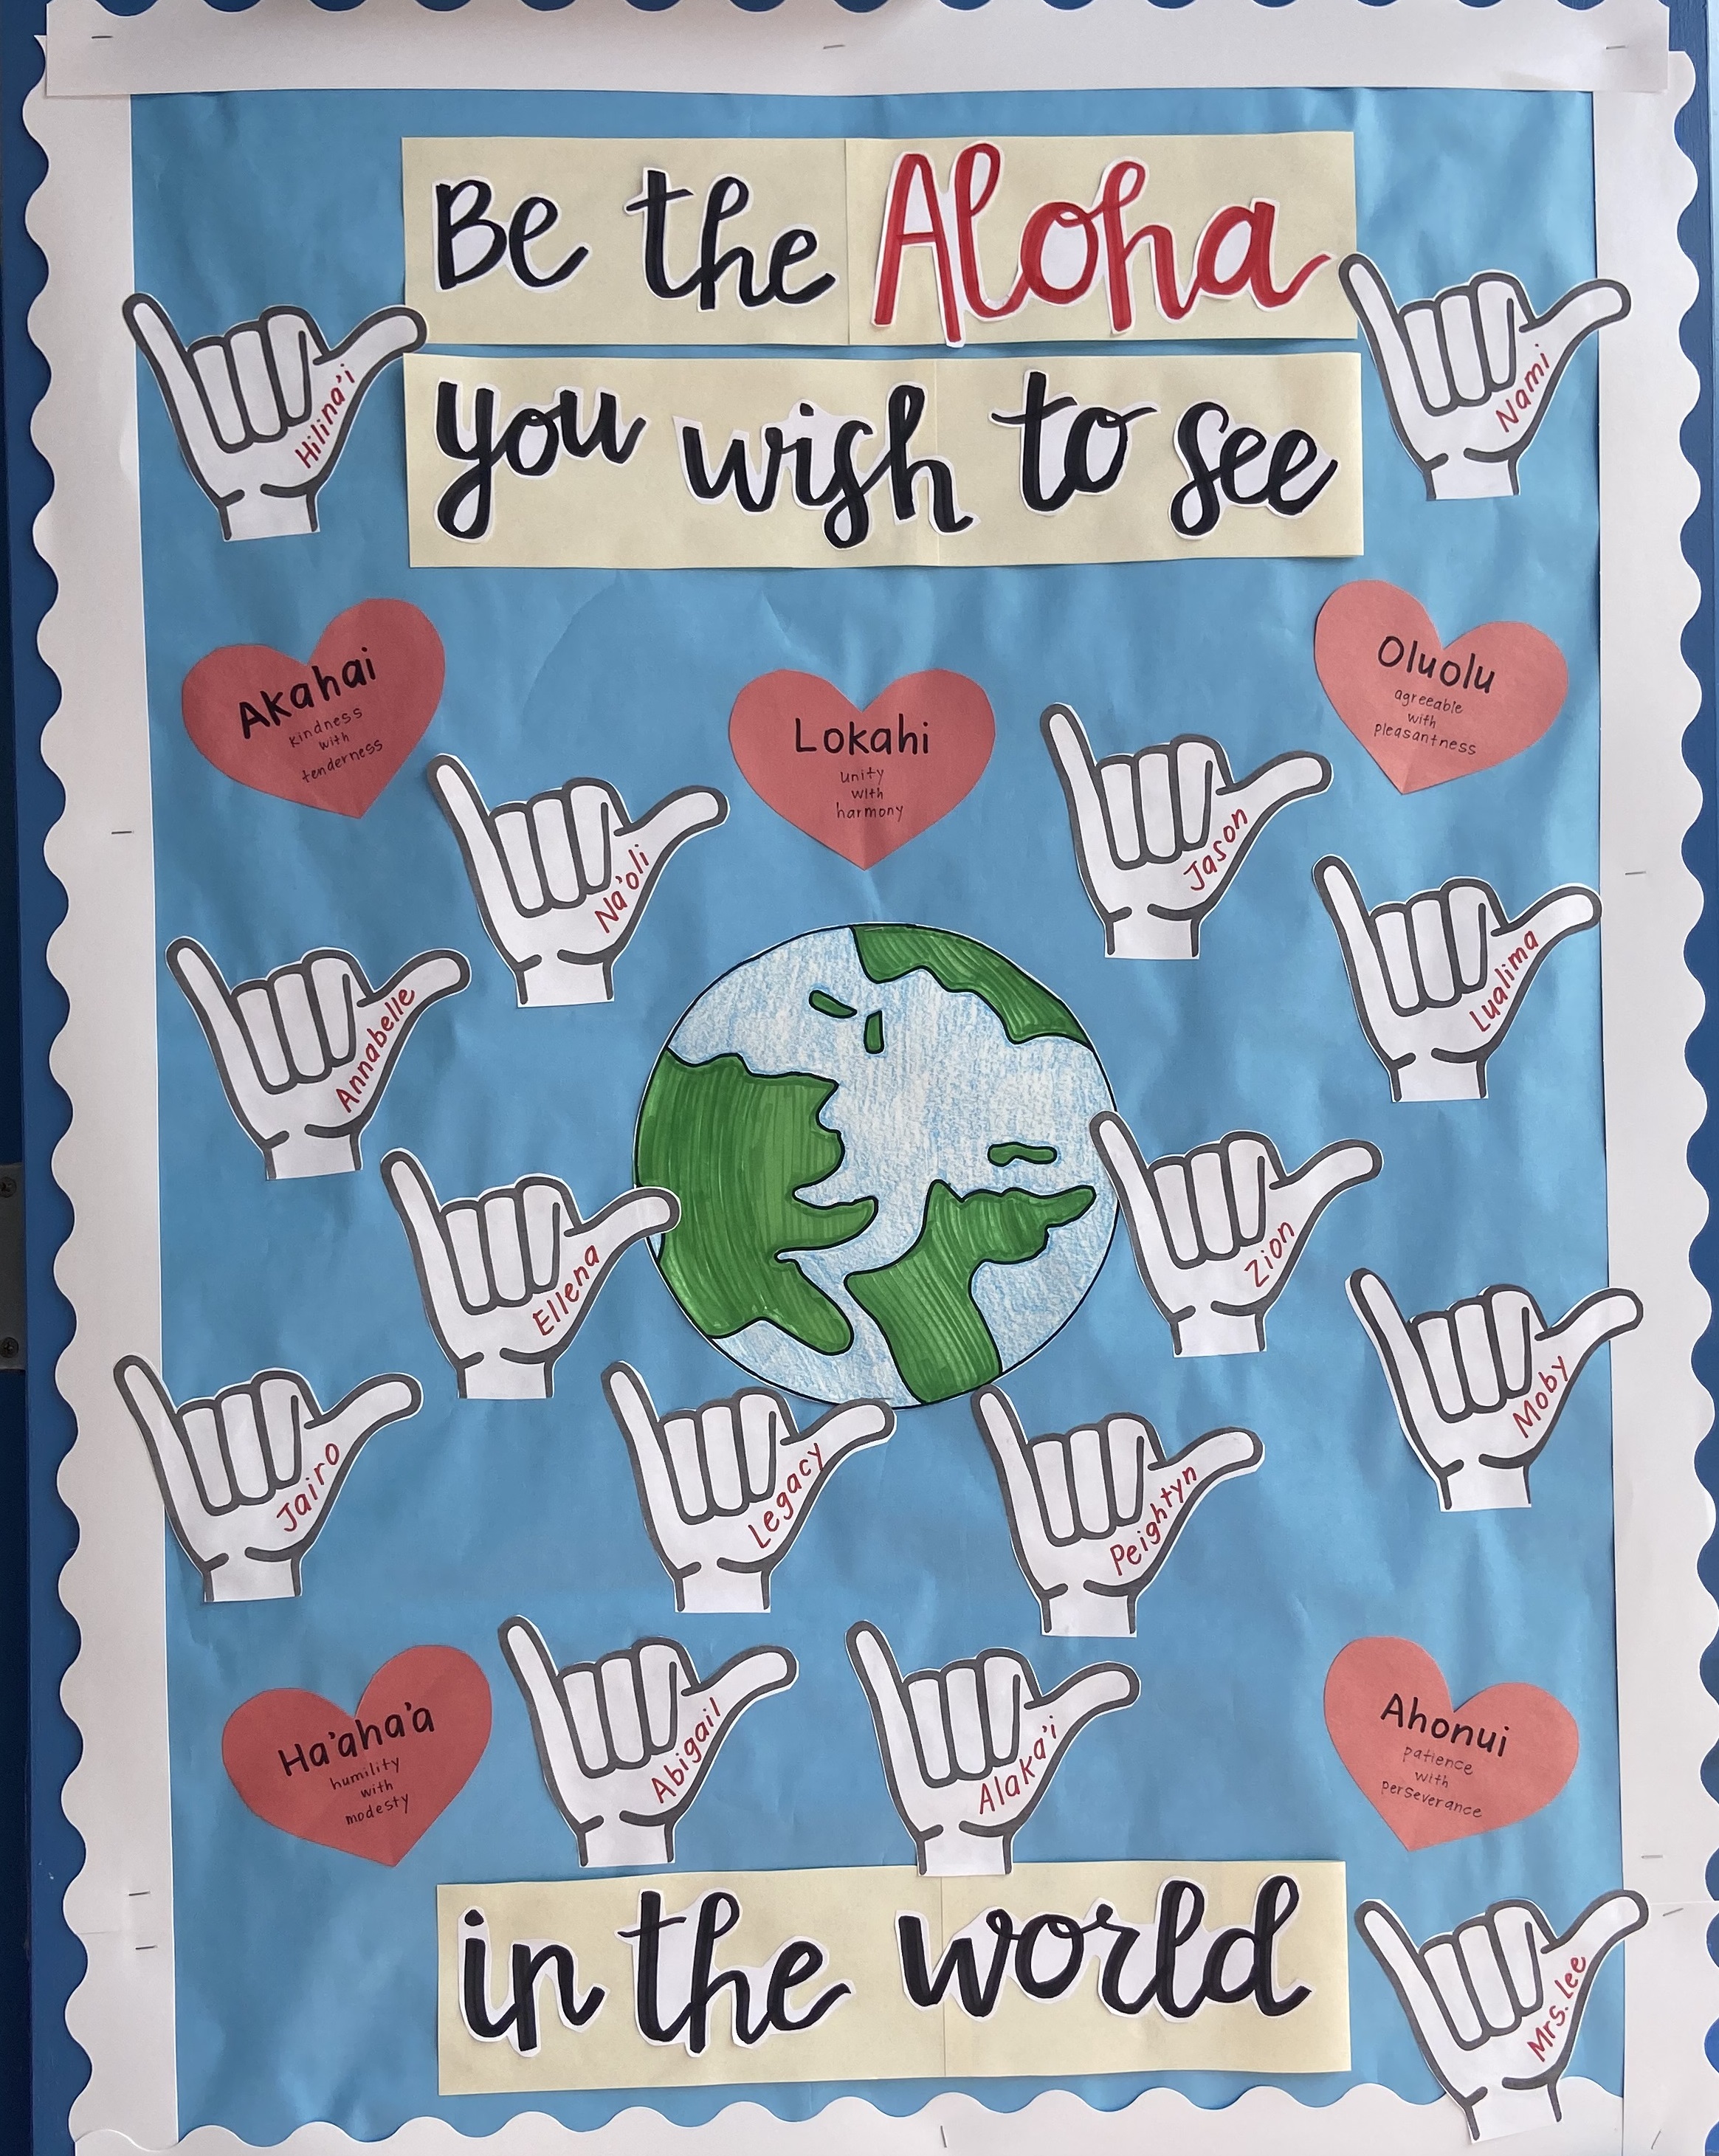 Mrs Lee's door national kindness month